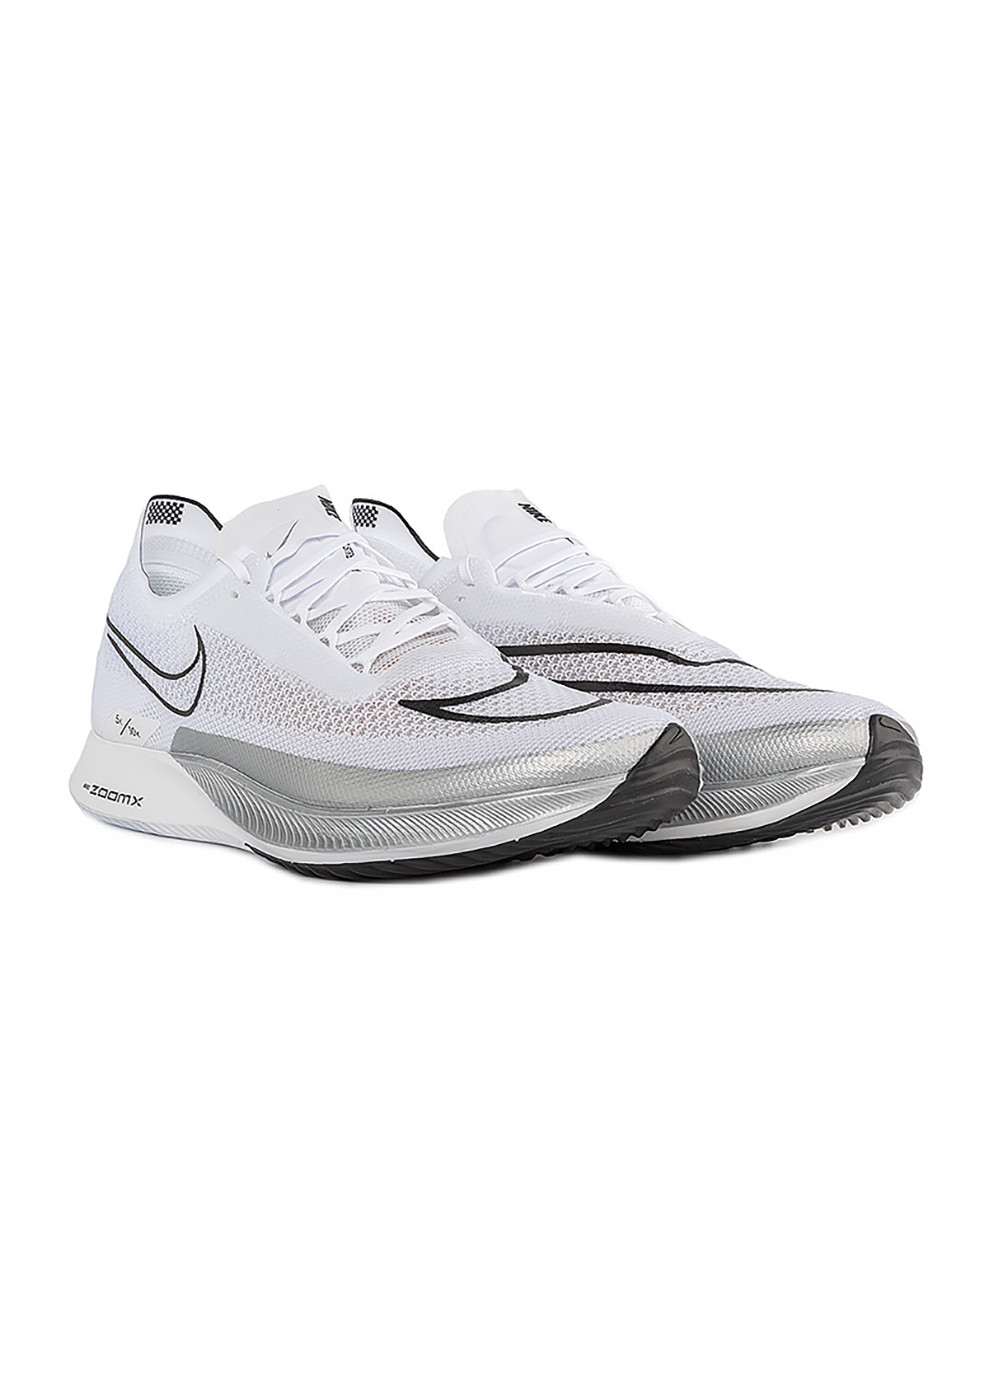 Цветные демисезонные мужские кроссовки zoomx streakfly комбинированный Nike